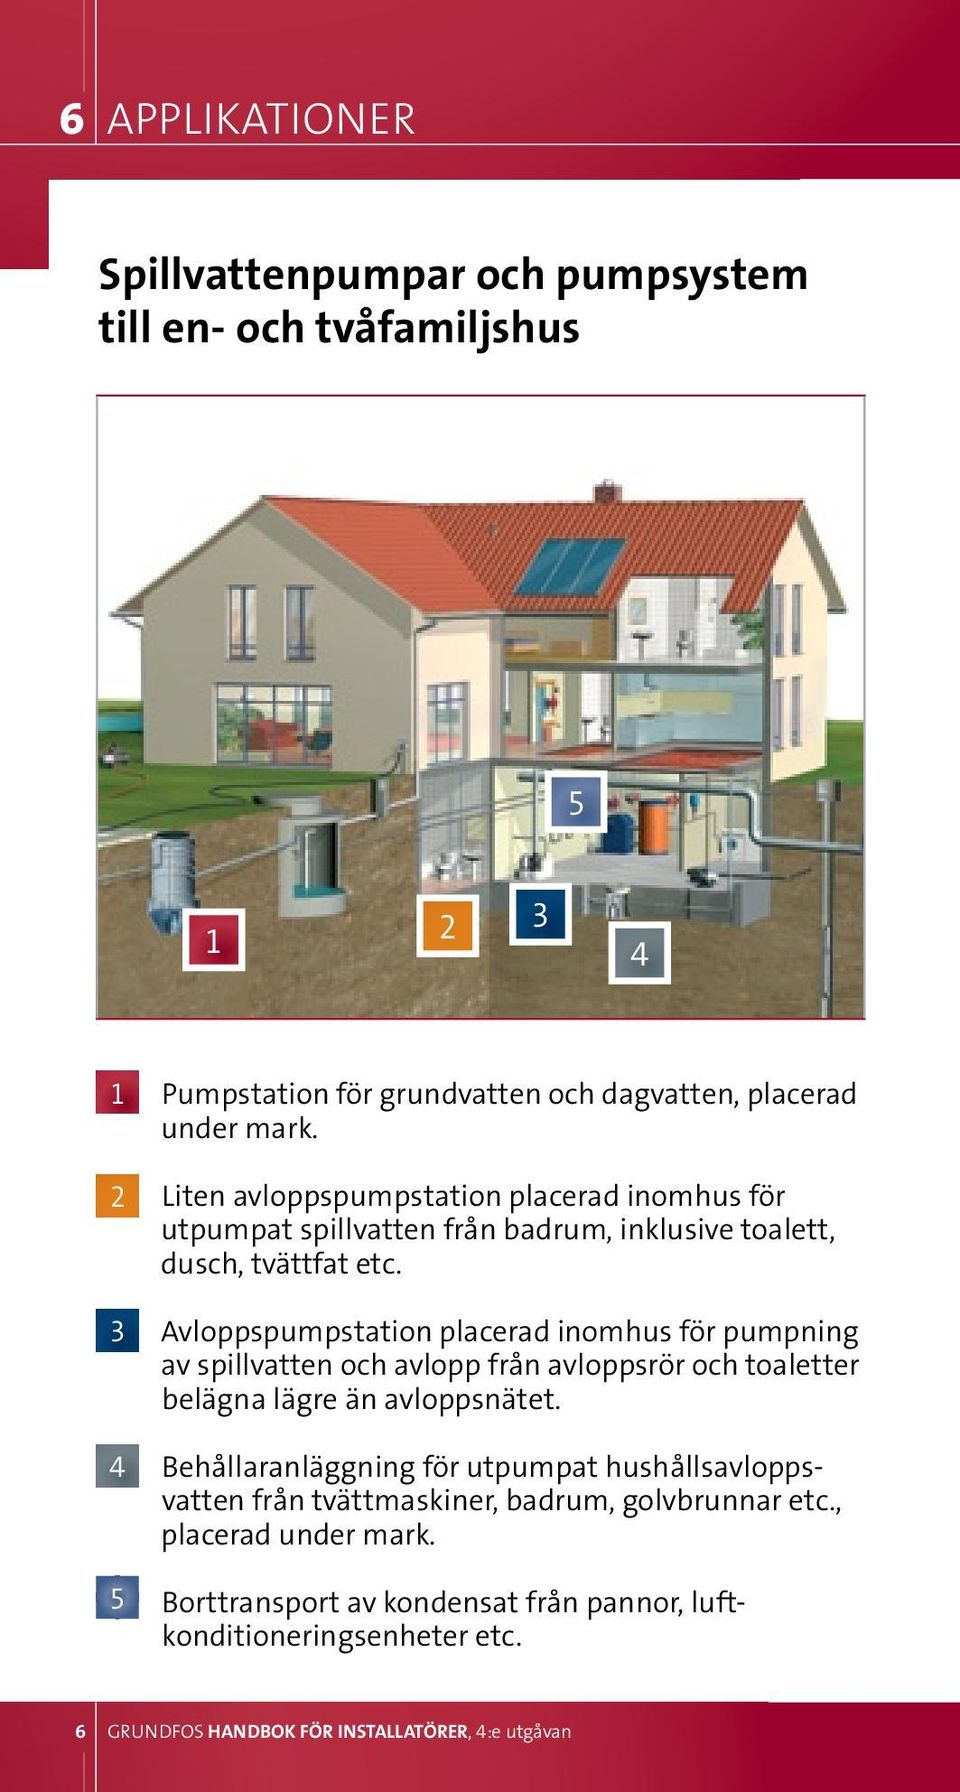 Avloppspumpstation placerad inomhus för pumpning av spillvatten och avlopp från avloppsrör och toaletter belägna lägre än avloppsnätet.